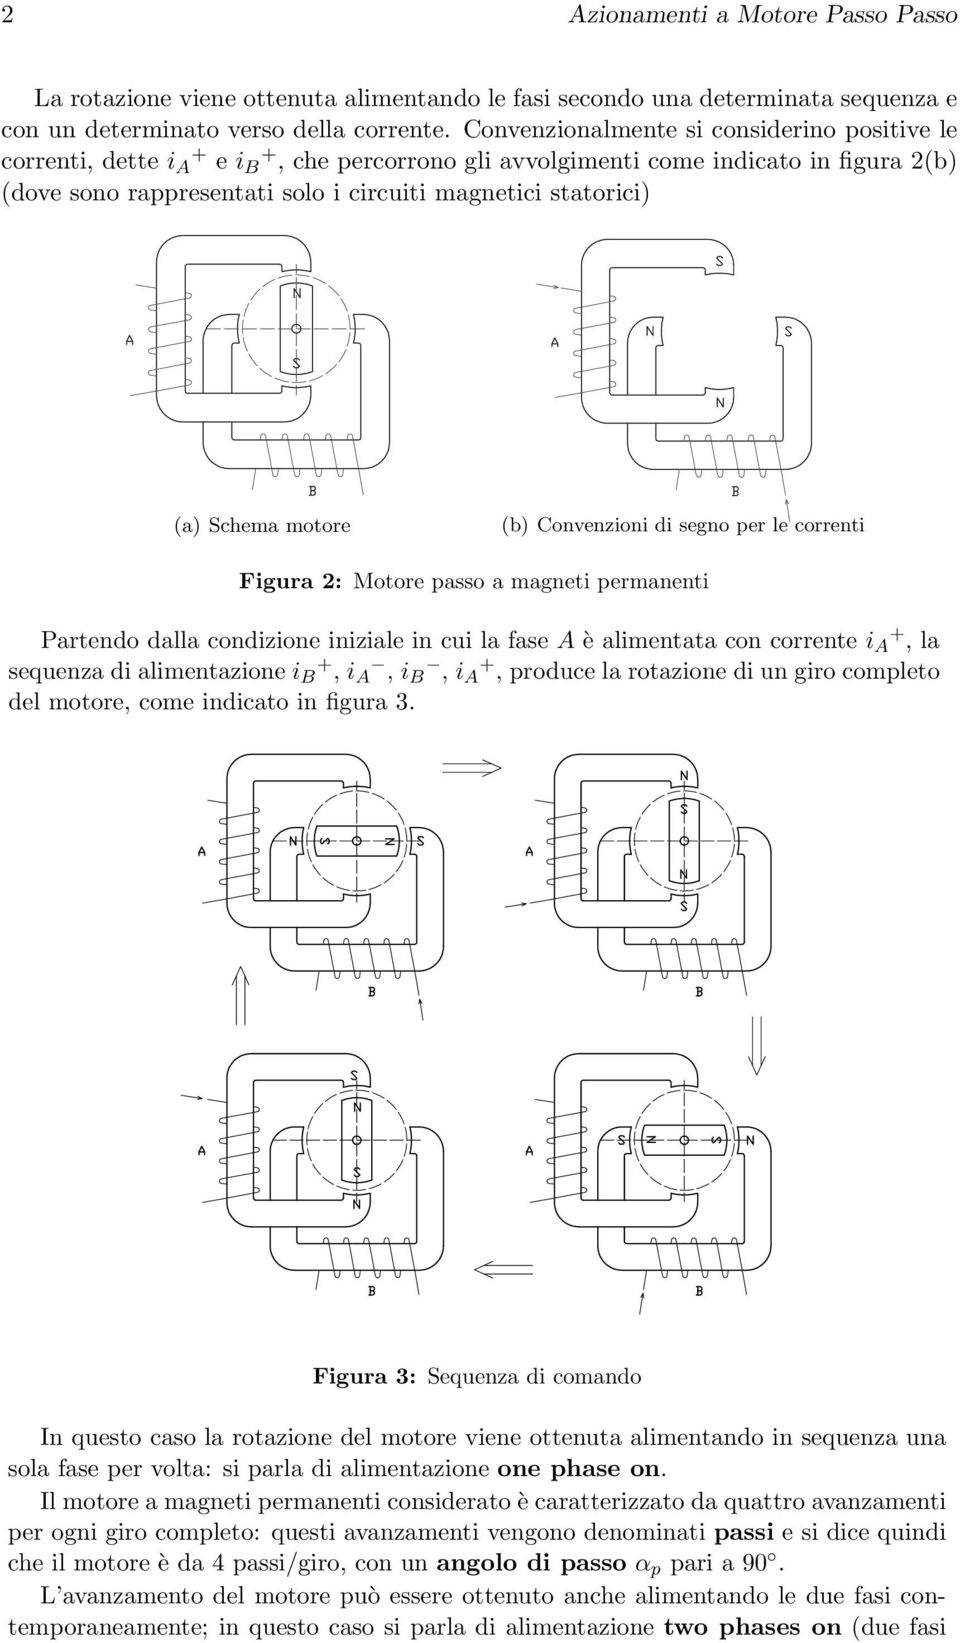 (a) Schema motore (b) Convenzioni di segno per le correnti Figura 2: Motore passo a magneti permanenti Partendo dalla condizione iniziale in cui la fase A è alimentata con corrente i A +, la sequenza